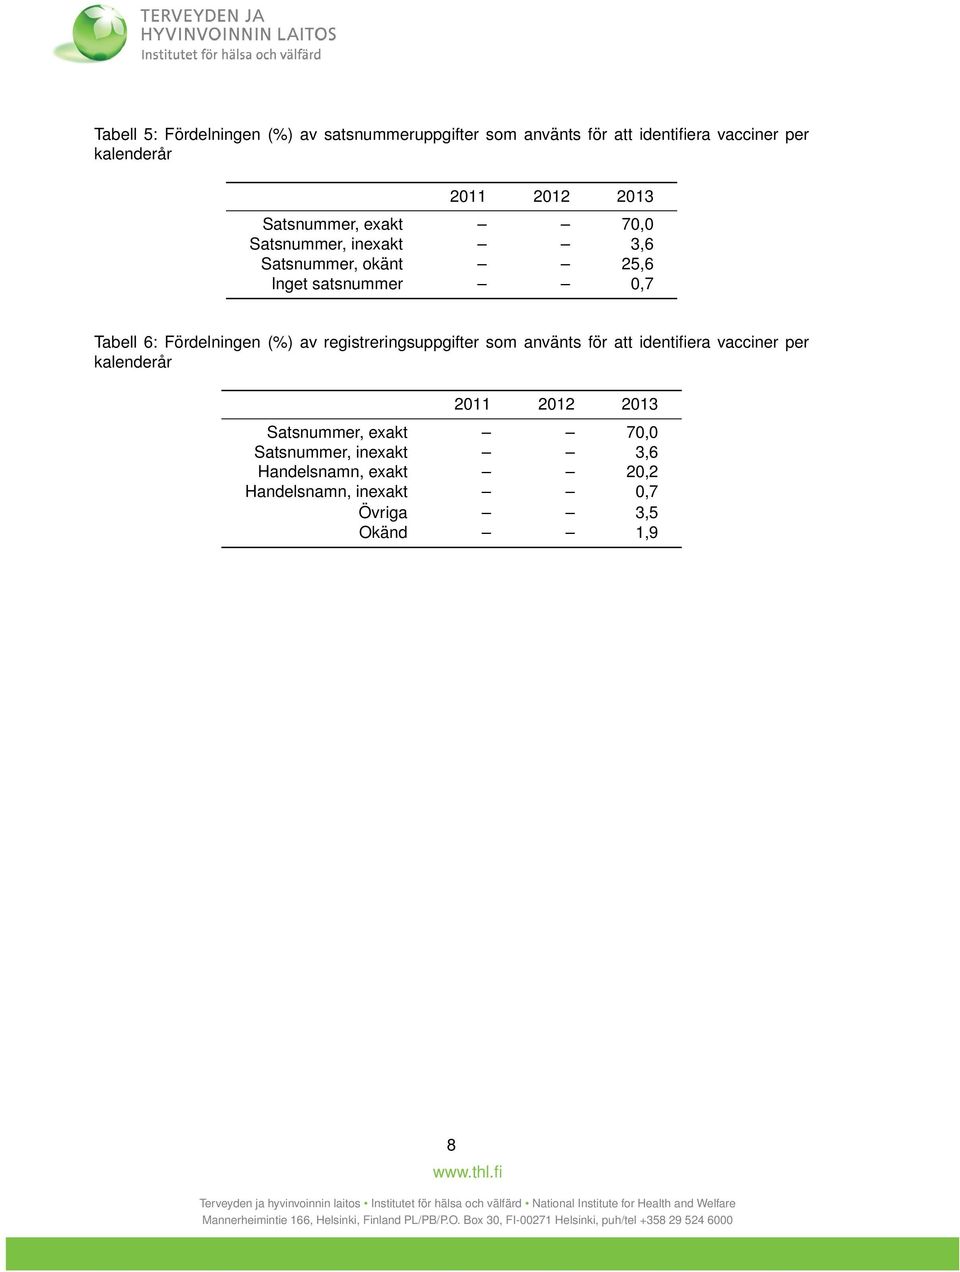 Fördelningen (%) av registreringsuppgifter som använts för att identifiera vacciner per kalenderår 2011 2012 2013